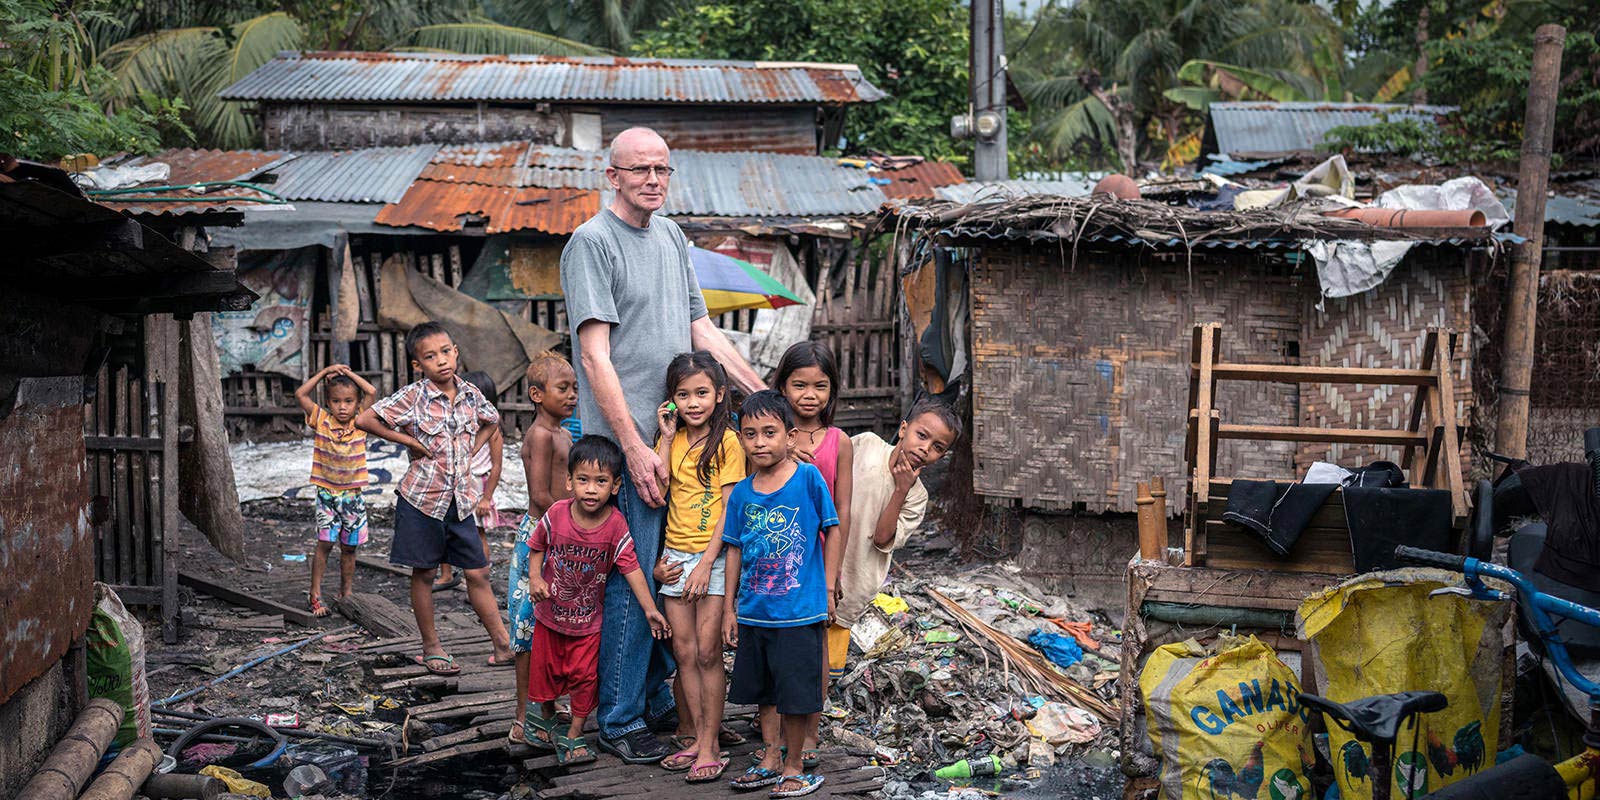 Padre Heinz Kulüke, Werbita, com crianças na favelas da ilha de Cebu, Filipinas.